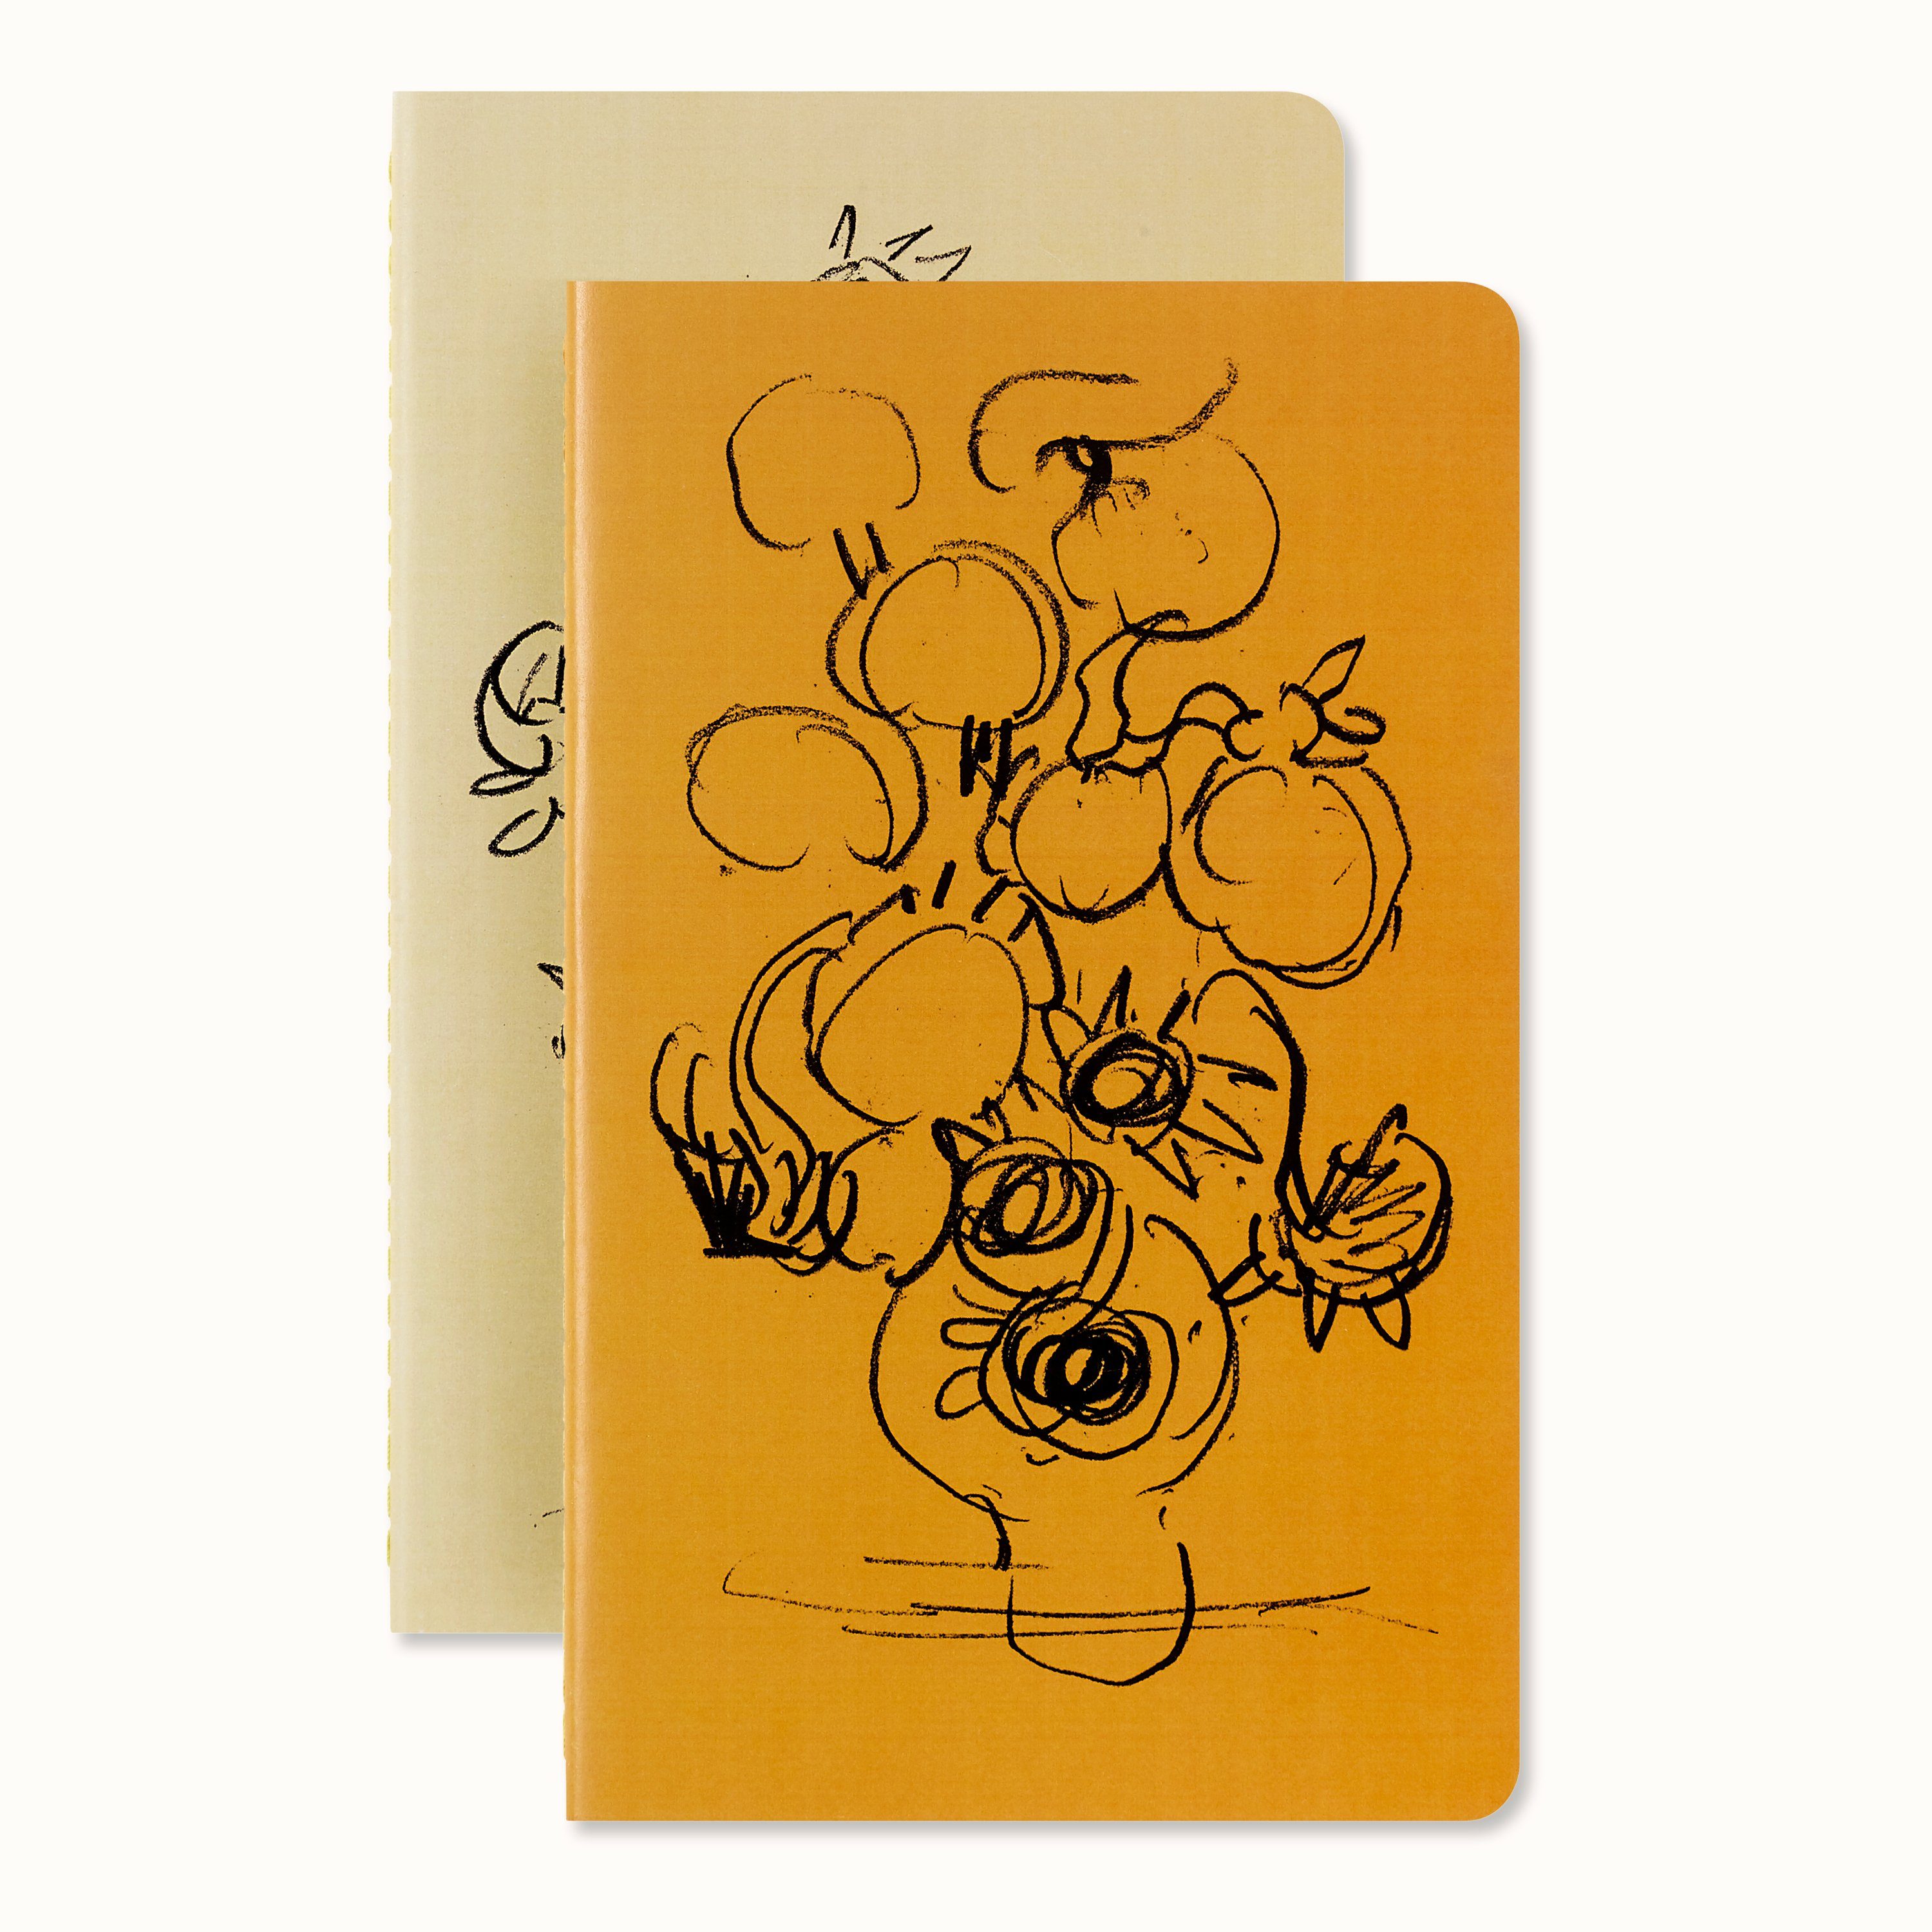 MOLESKINE Notizbuch, Cahier - Van Gogh, A5, 2er Set, liniert, Kartoneinband | Notizbücher